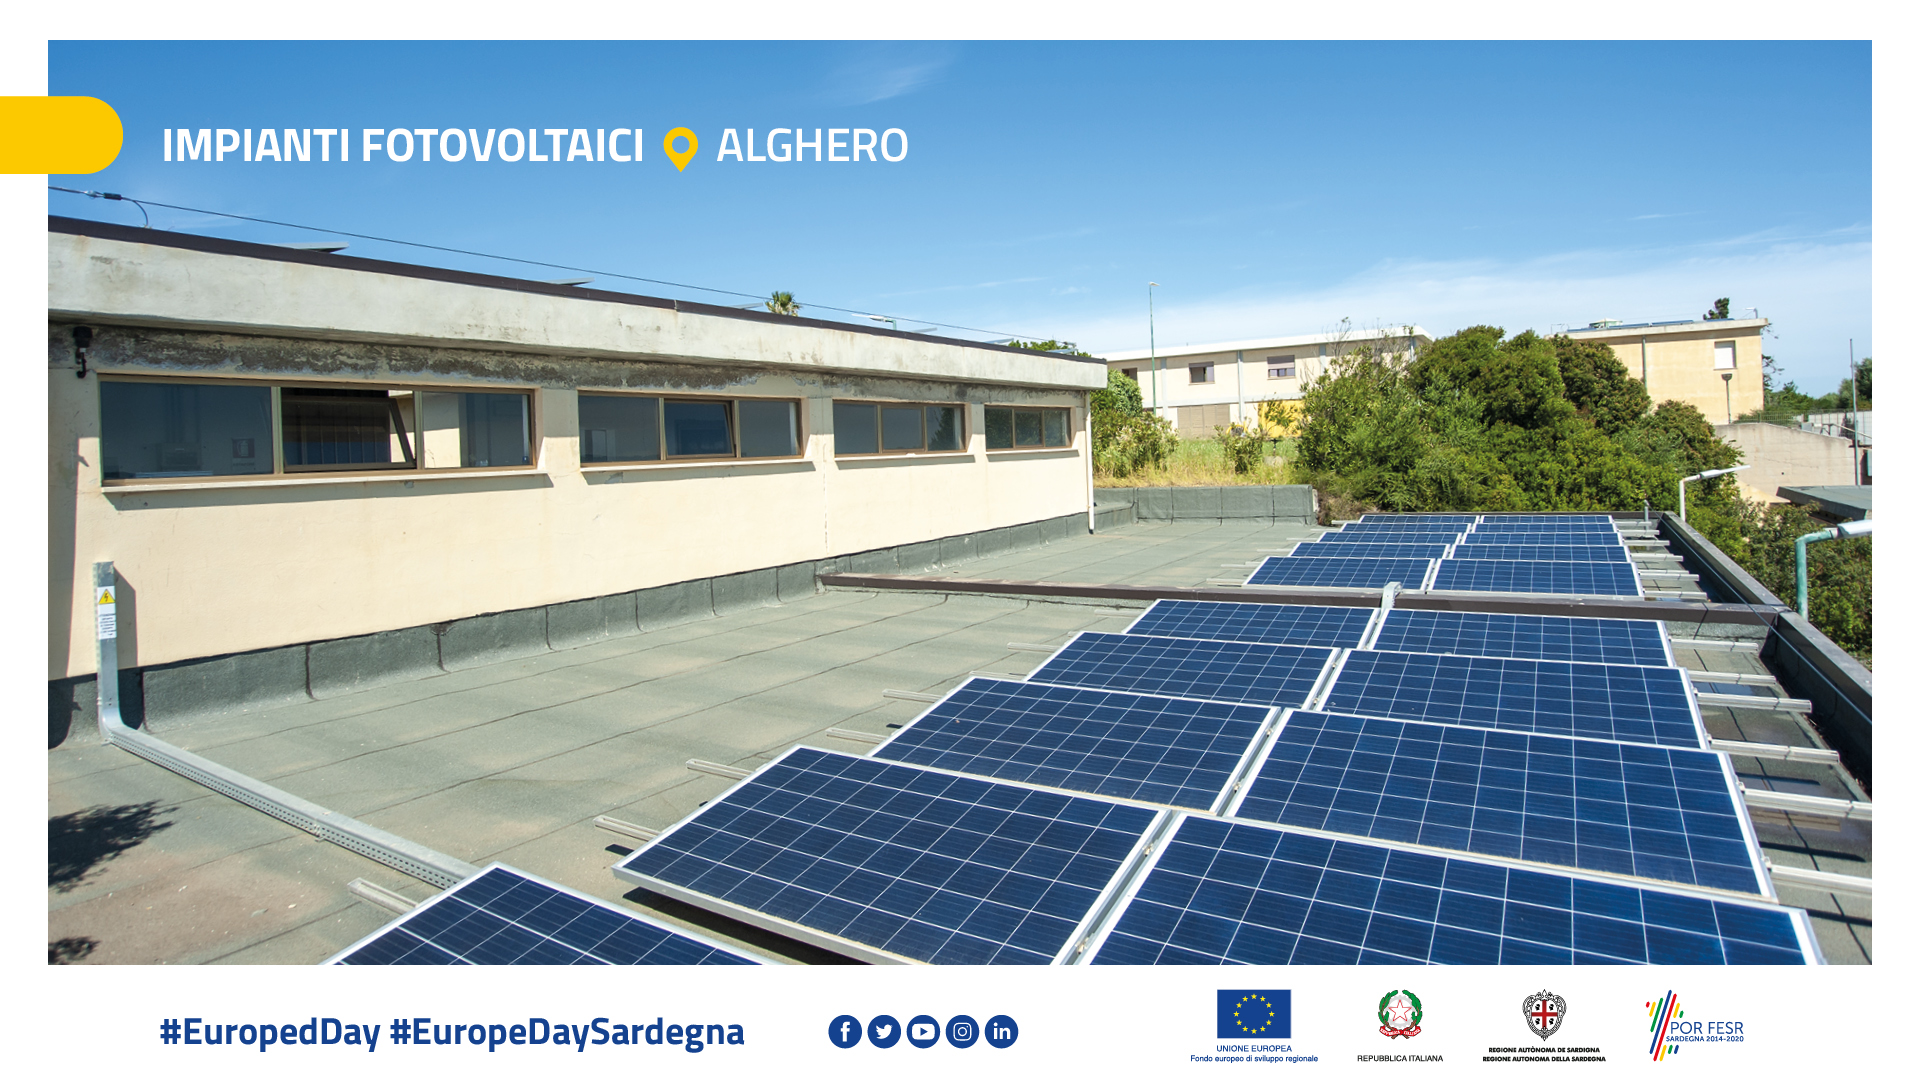 Impianti fotovoltaici – Alghero